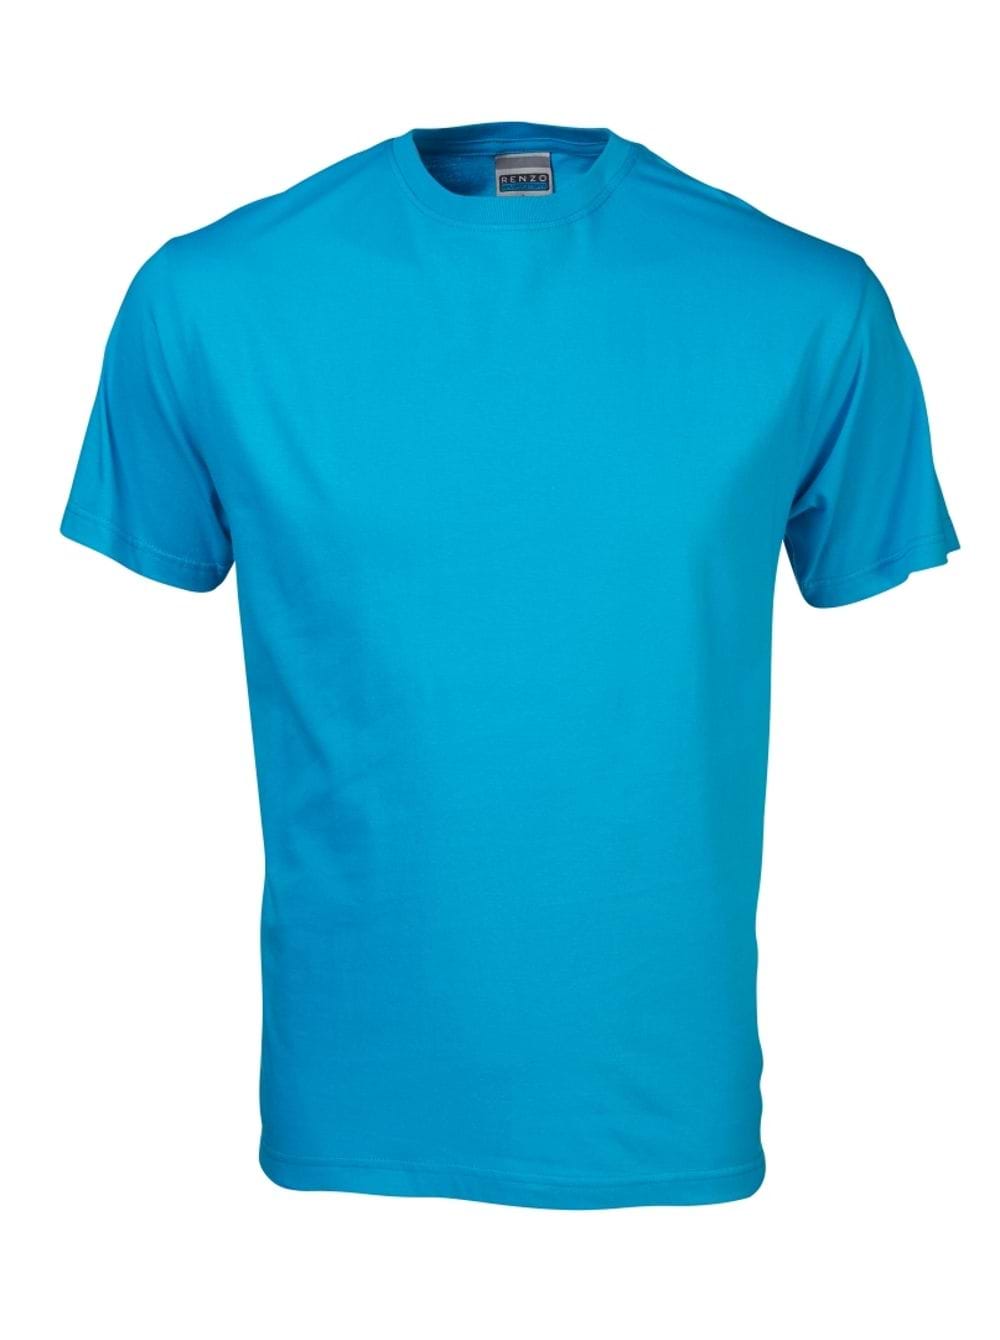 165G Crew Neck T-Shirt - Cyan Blue / L